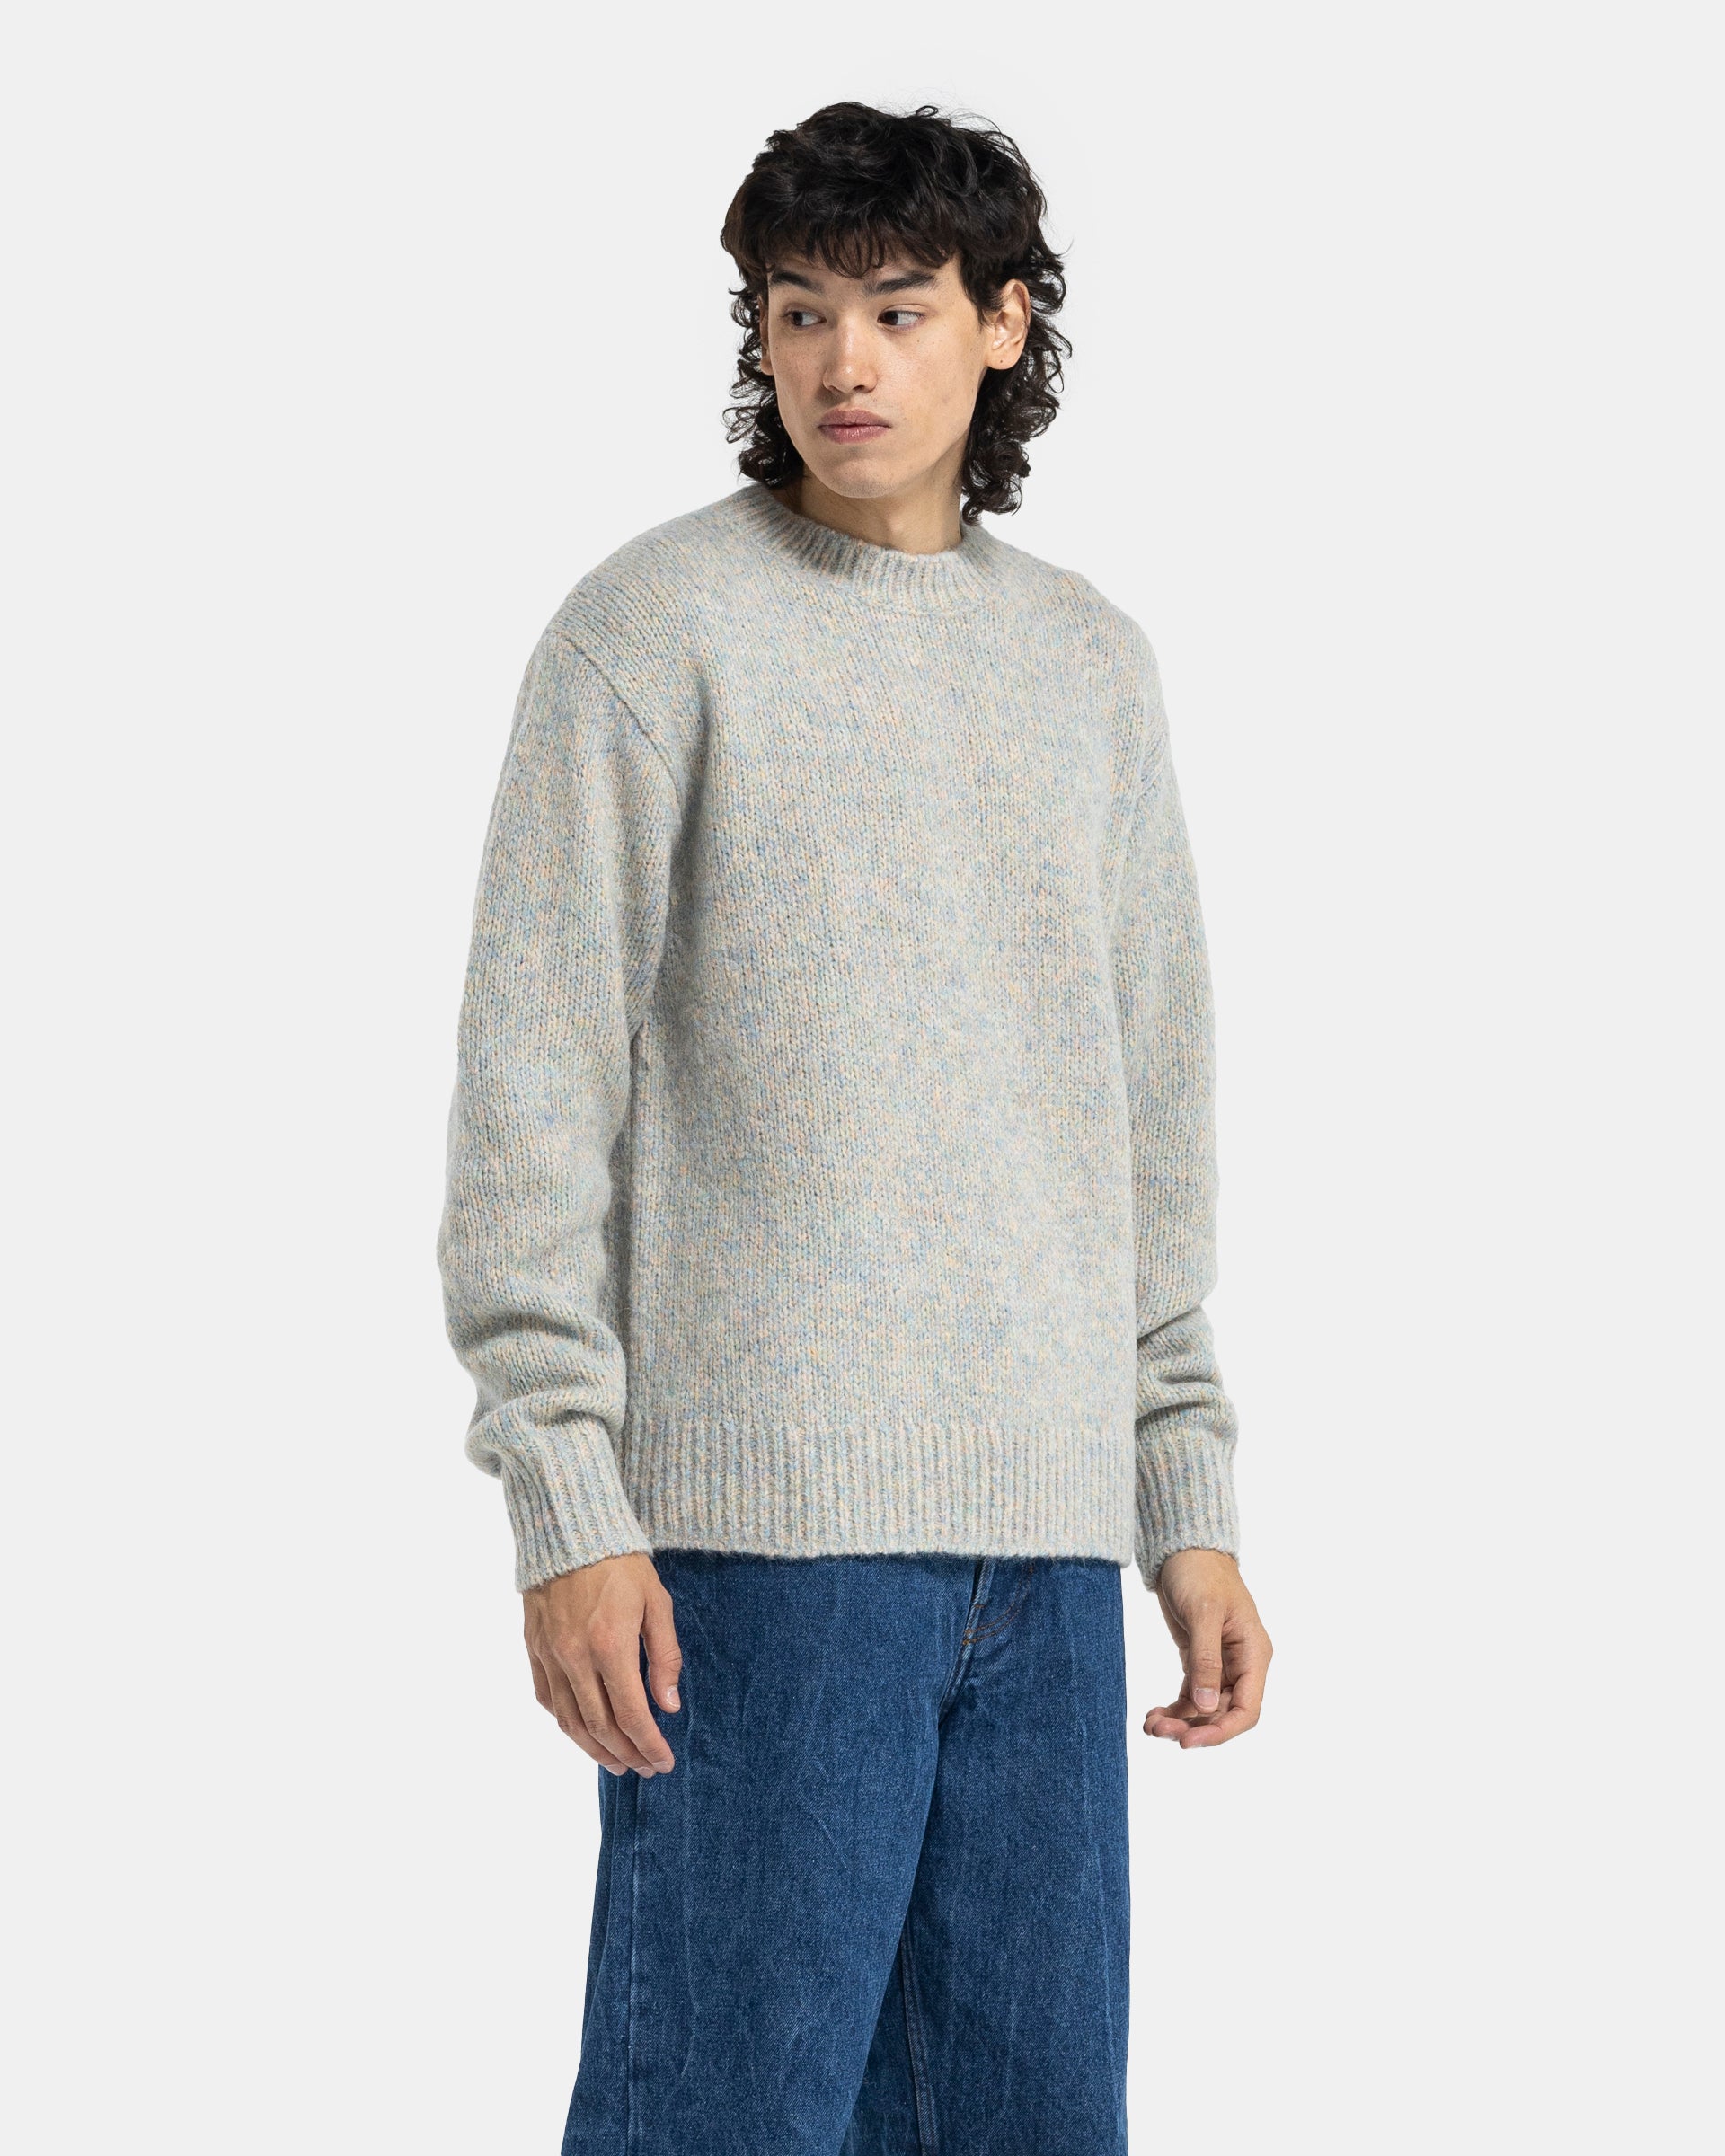 Morane Sweater in Light Blue